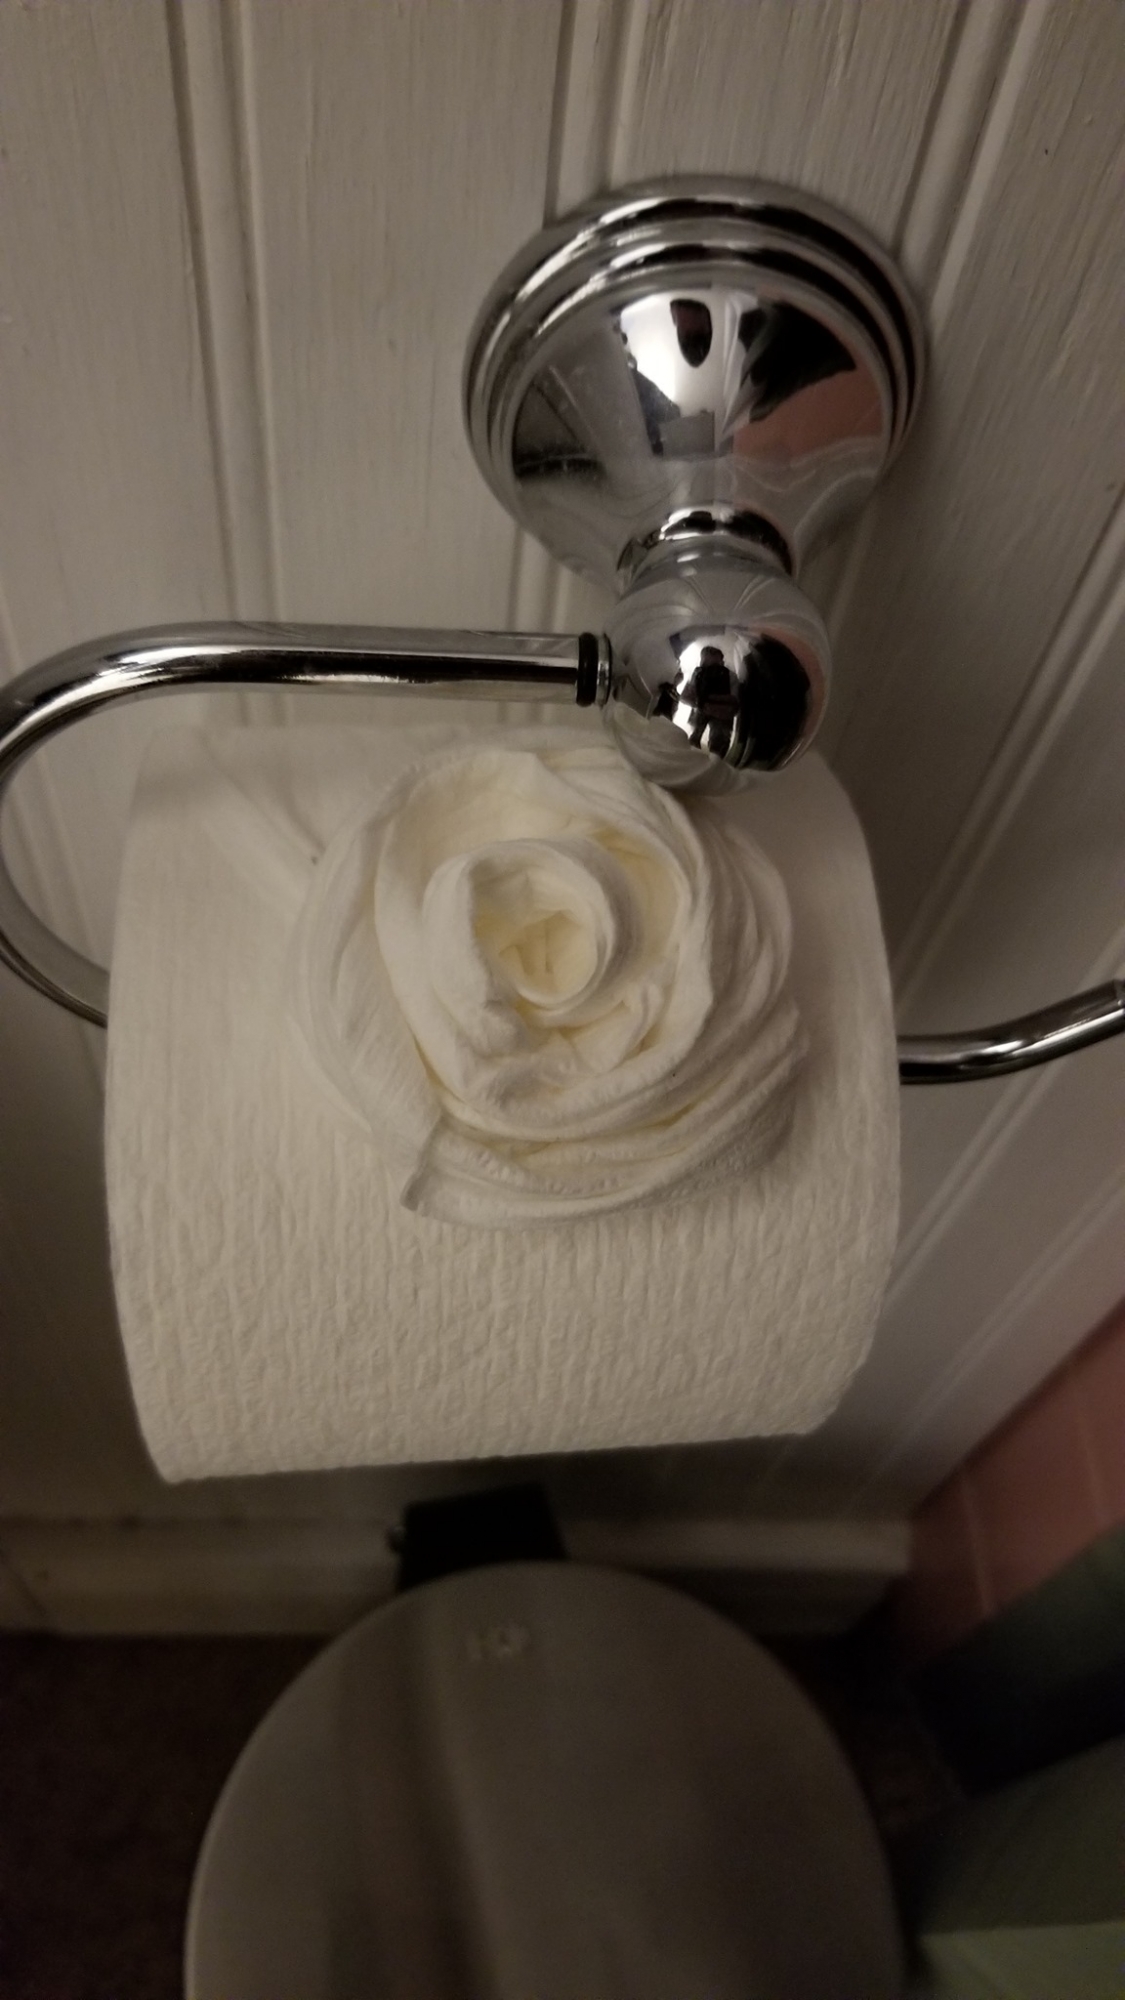 El intruso dejó rosas hechas con el papel higiénico. (Facebook / Nate Roman)